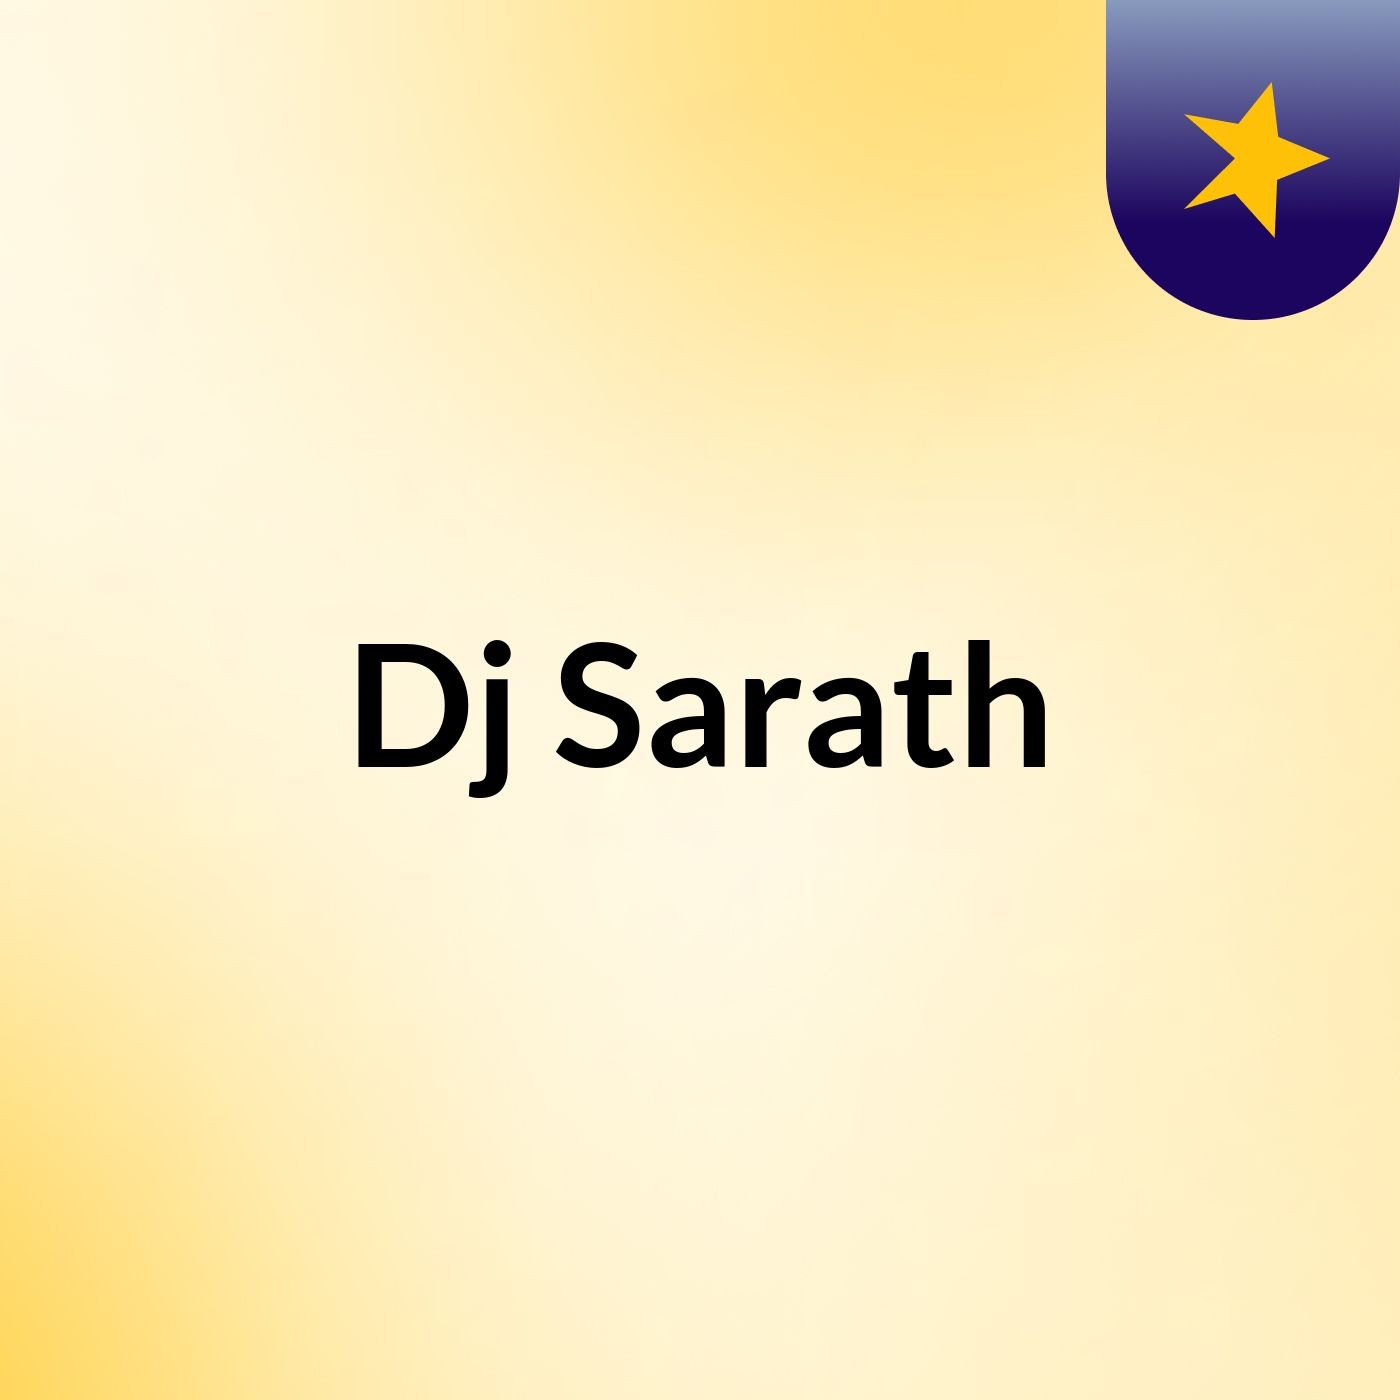 Episode 6 - Dj Sarath